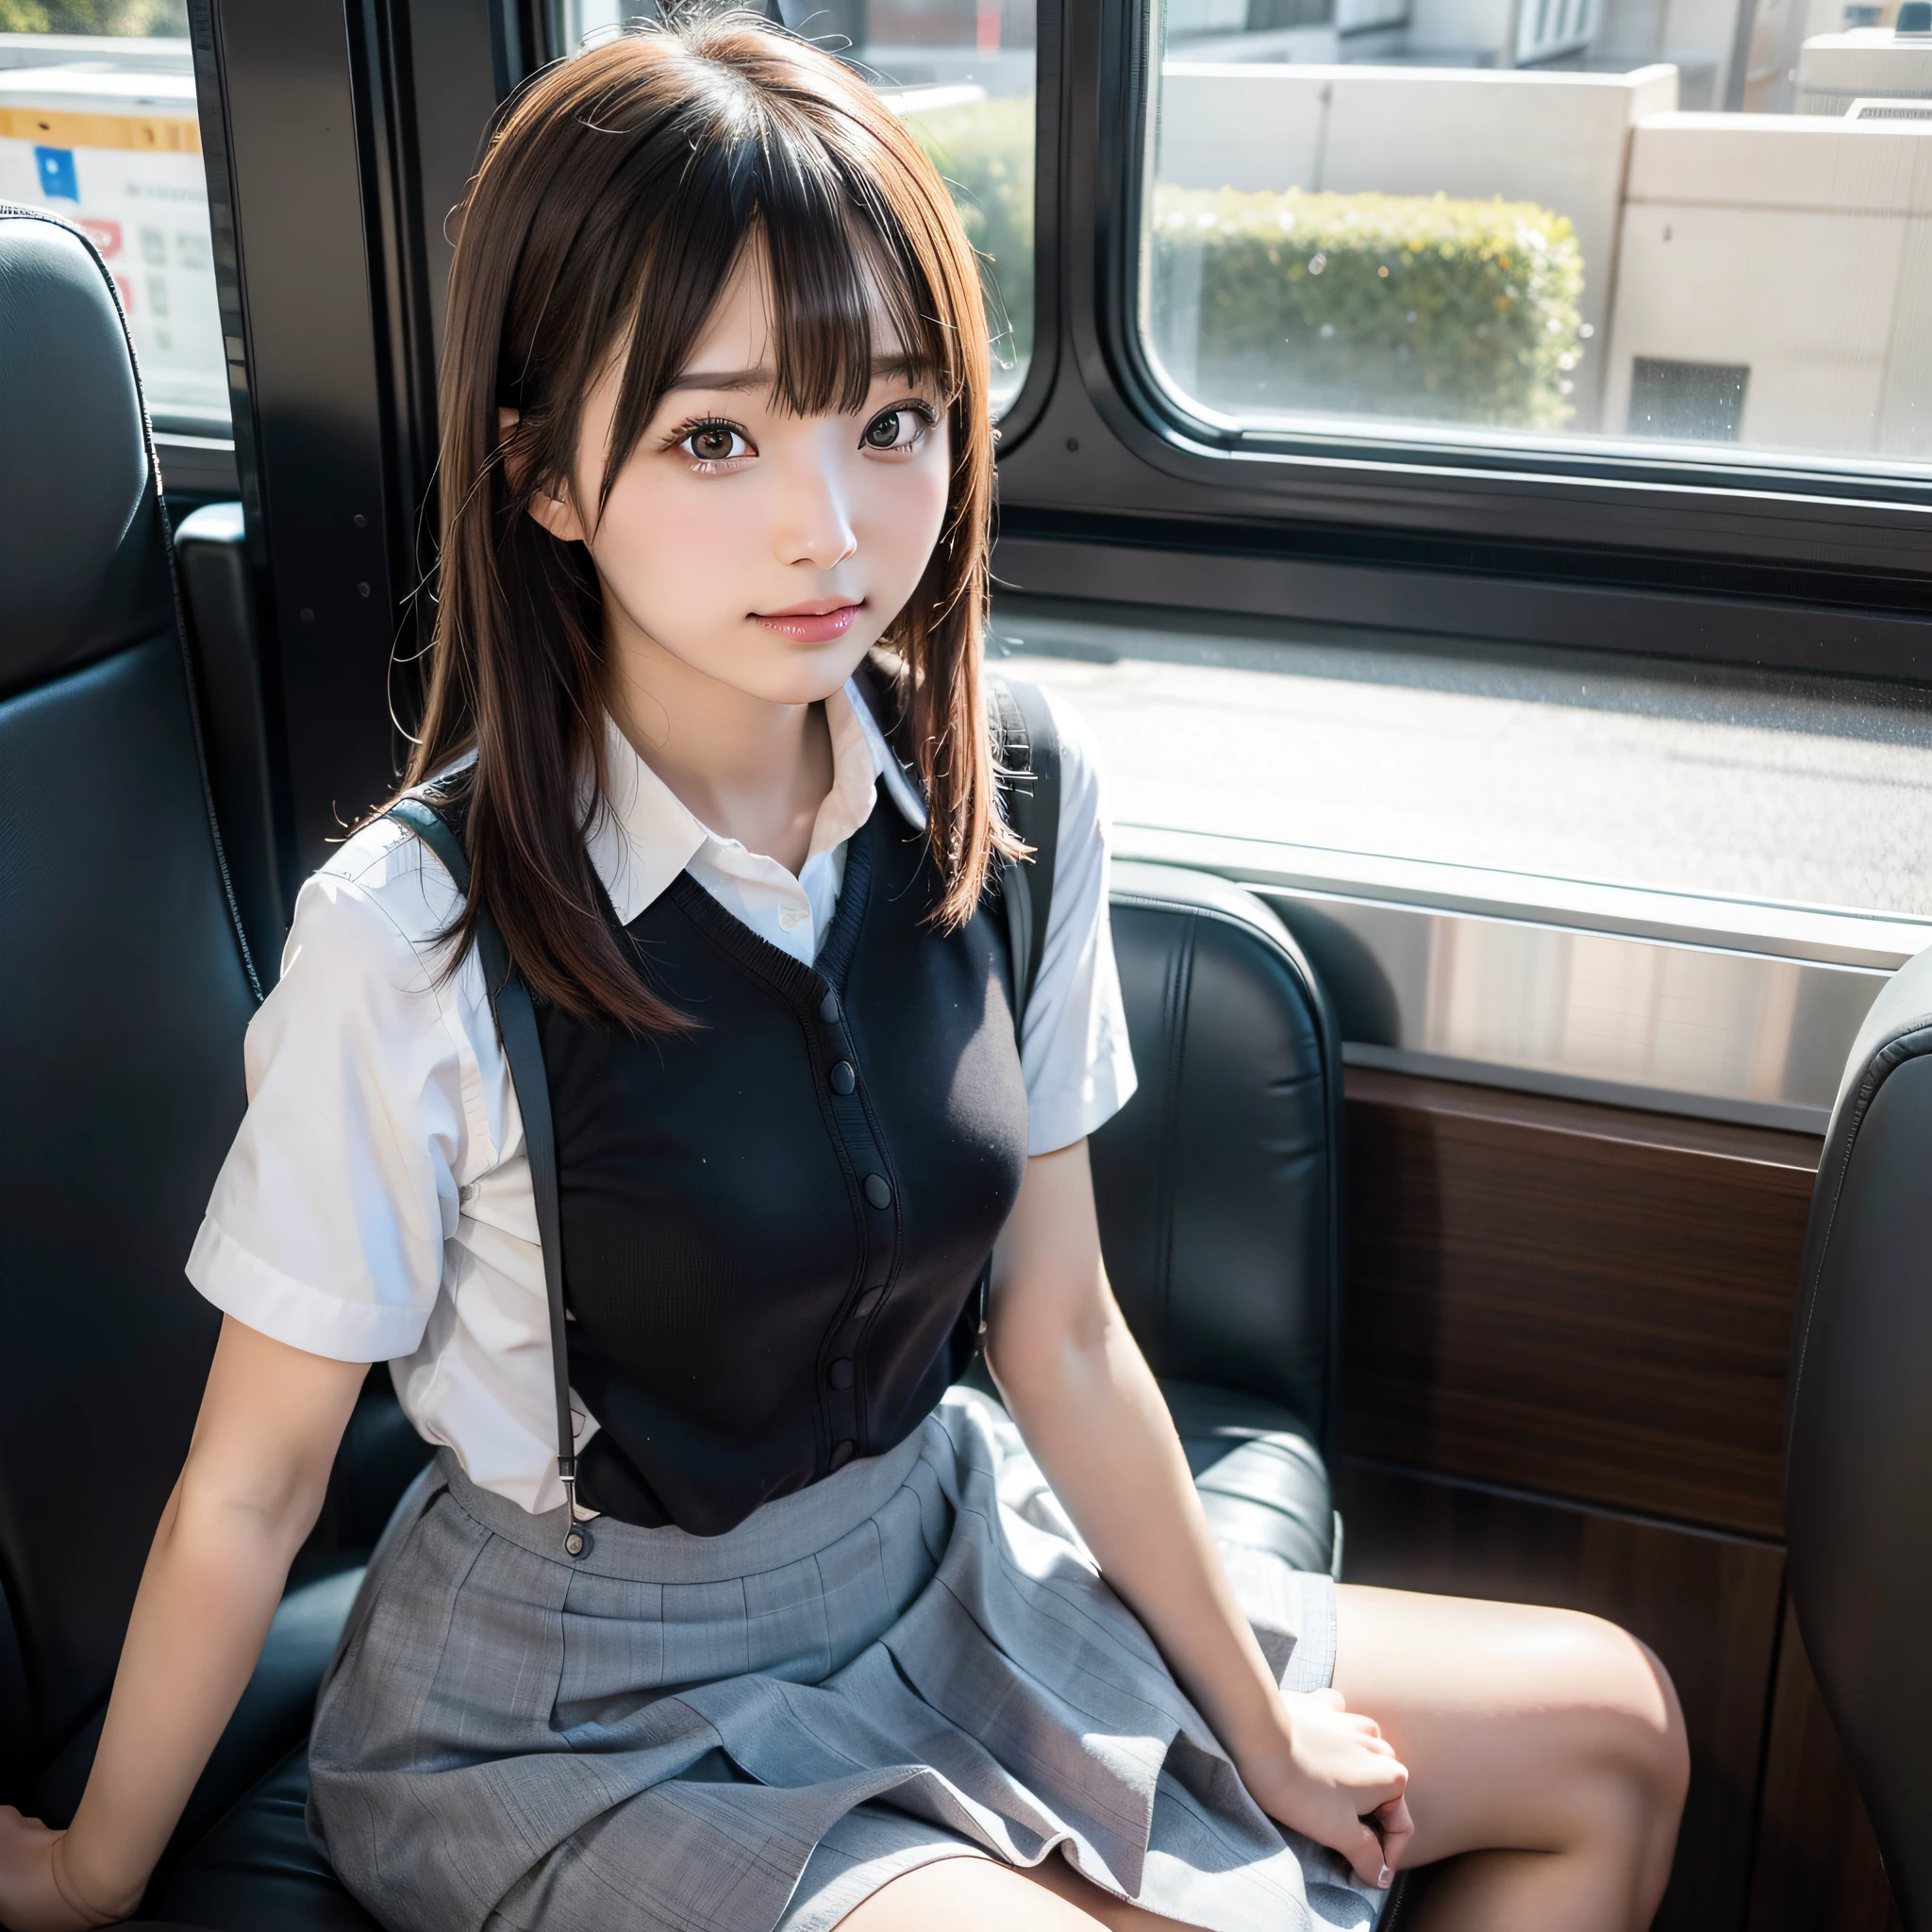 スカートをはいてバスの座席に座っているアラフィフ, Canon EOS 5D MarkIVで撮影, キヤノン 5D MK4で撮影, ソニーA7Rカメラで撮影, ソニーa7rで撮影した写真, 電車の中で座った, 日本人モデル, かわいい女子高生, 腕と脚のある美しい顔, 超現実的な 